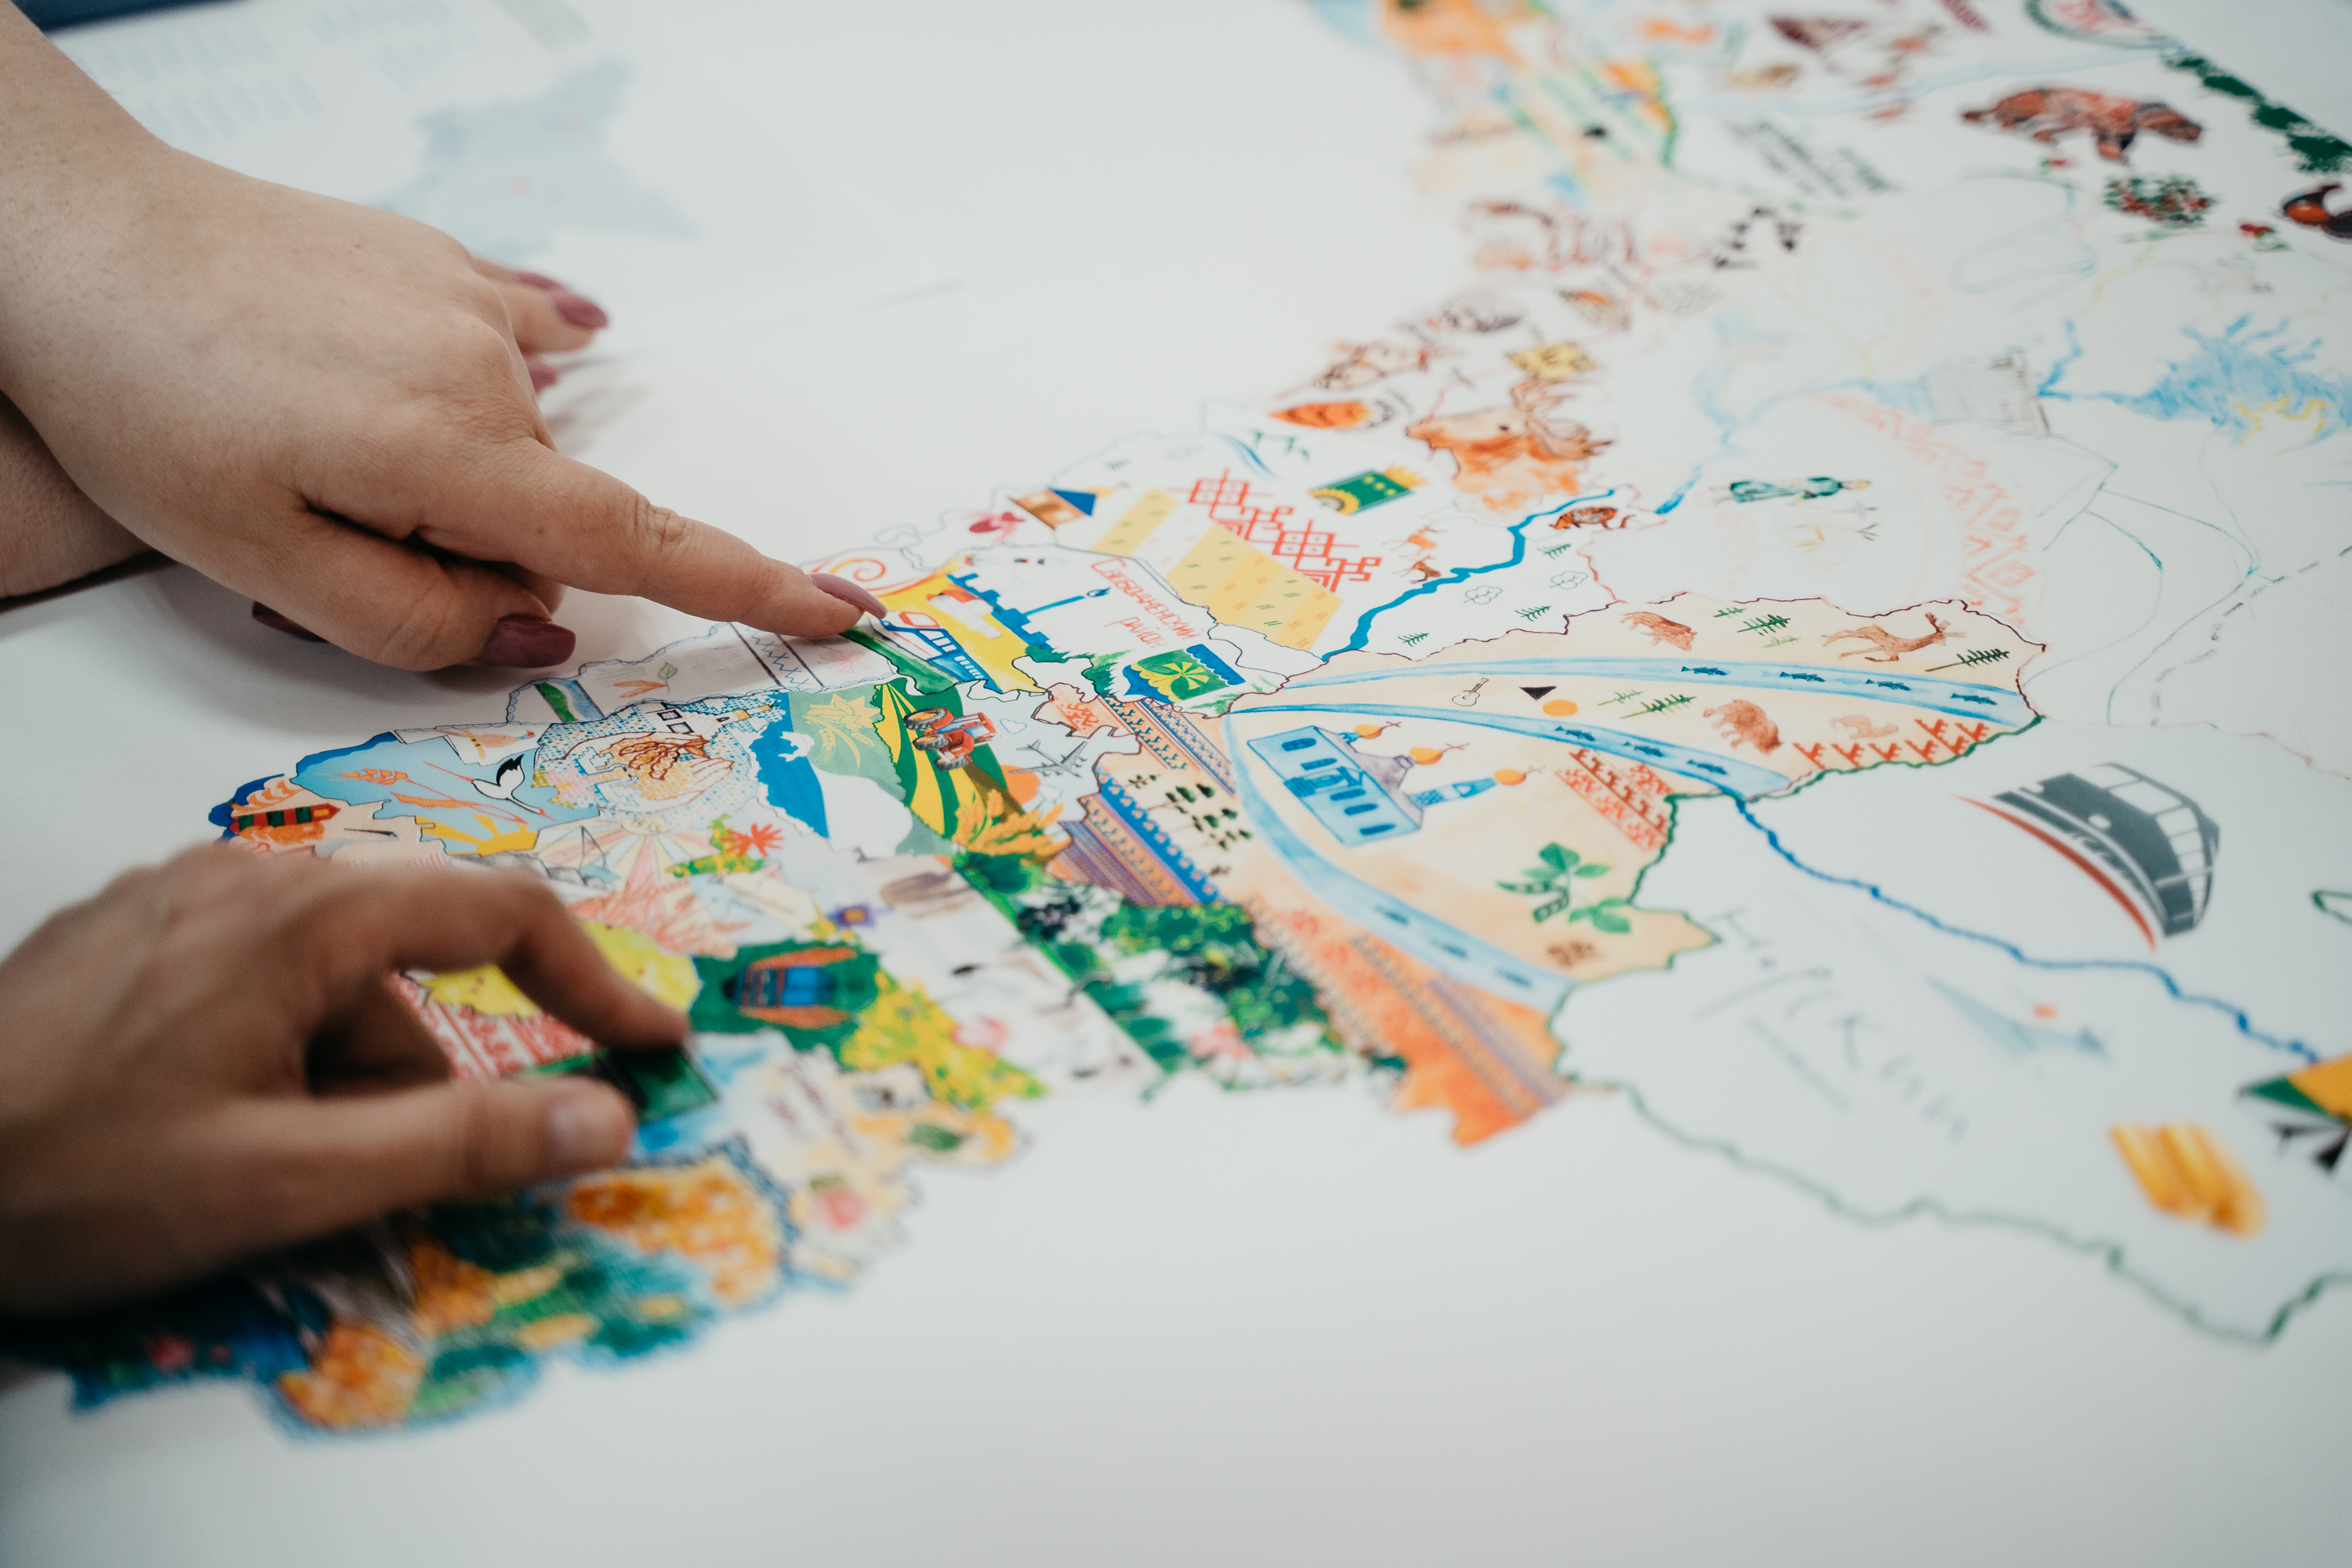 Трехметровую карту Приамурья вышьют амурские мастерицы к 165-летию региона. Фото: Оксана Шишенко